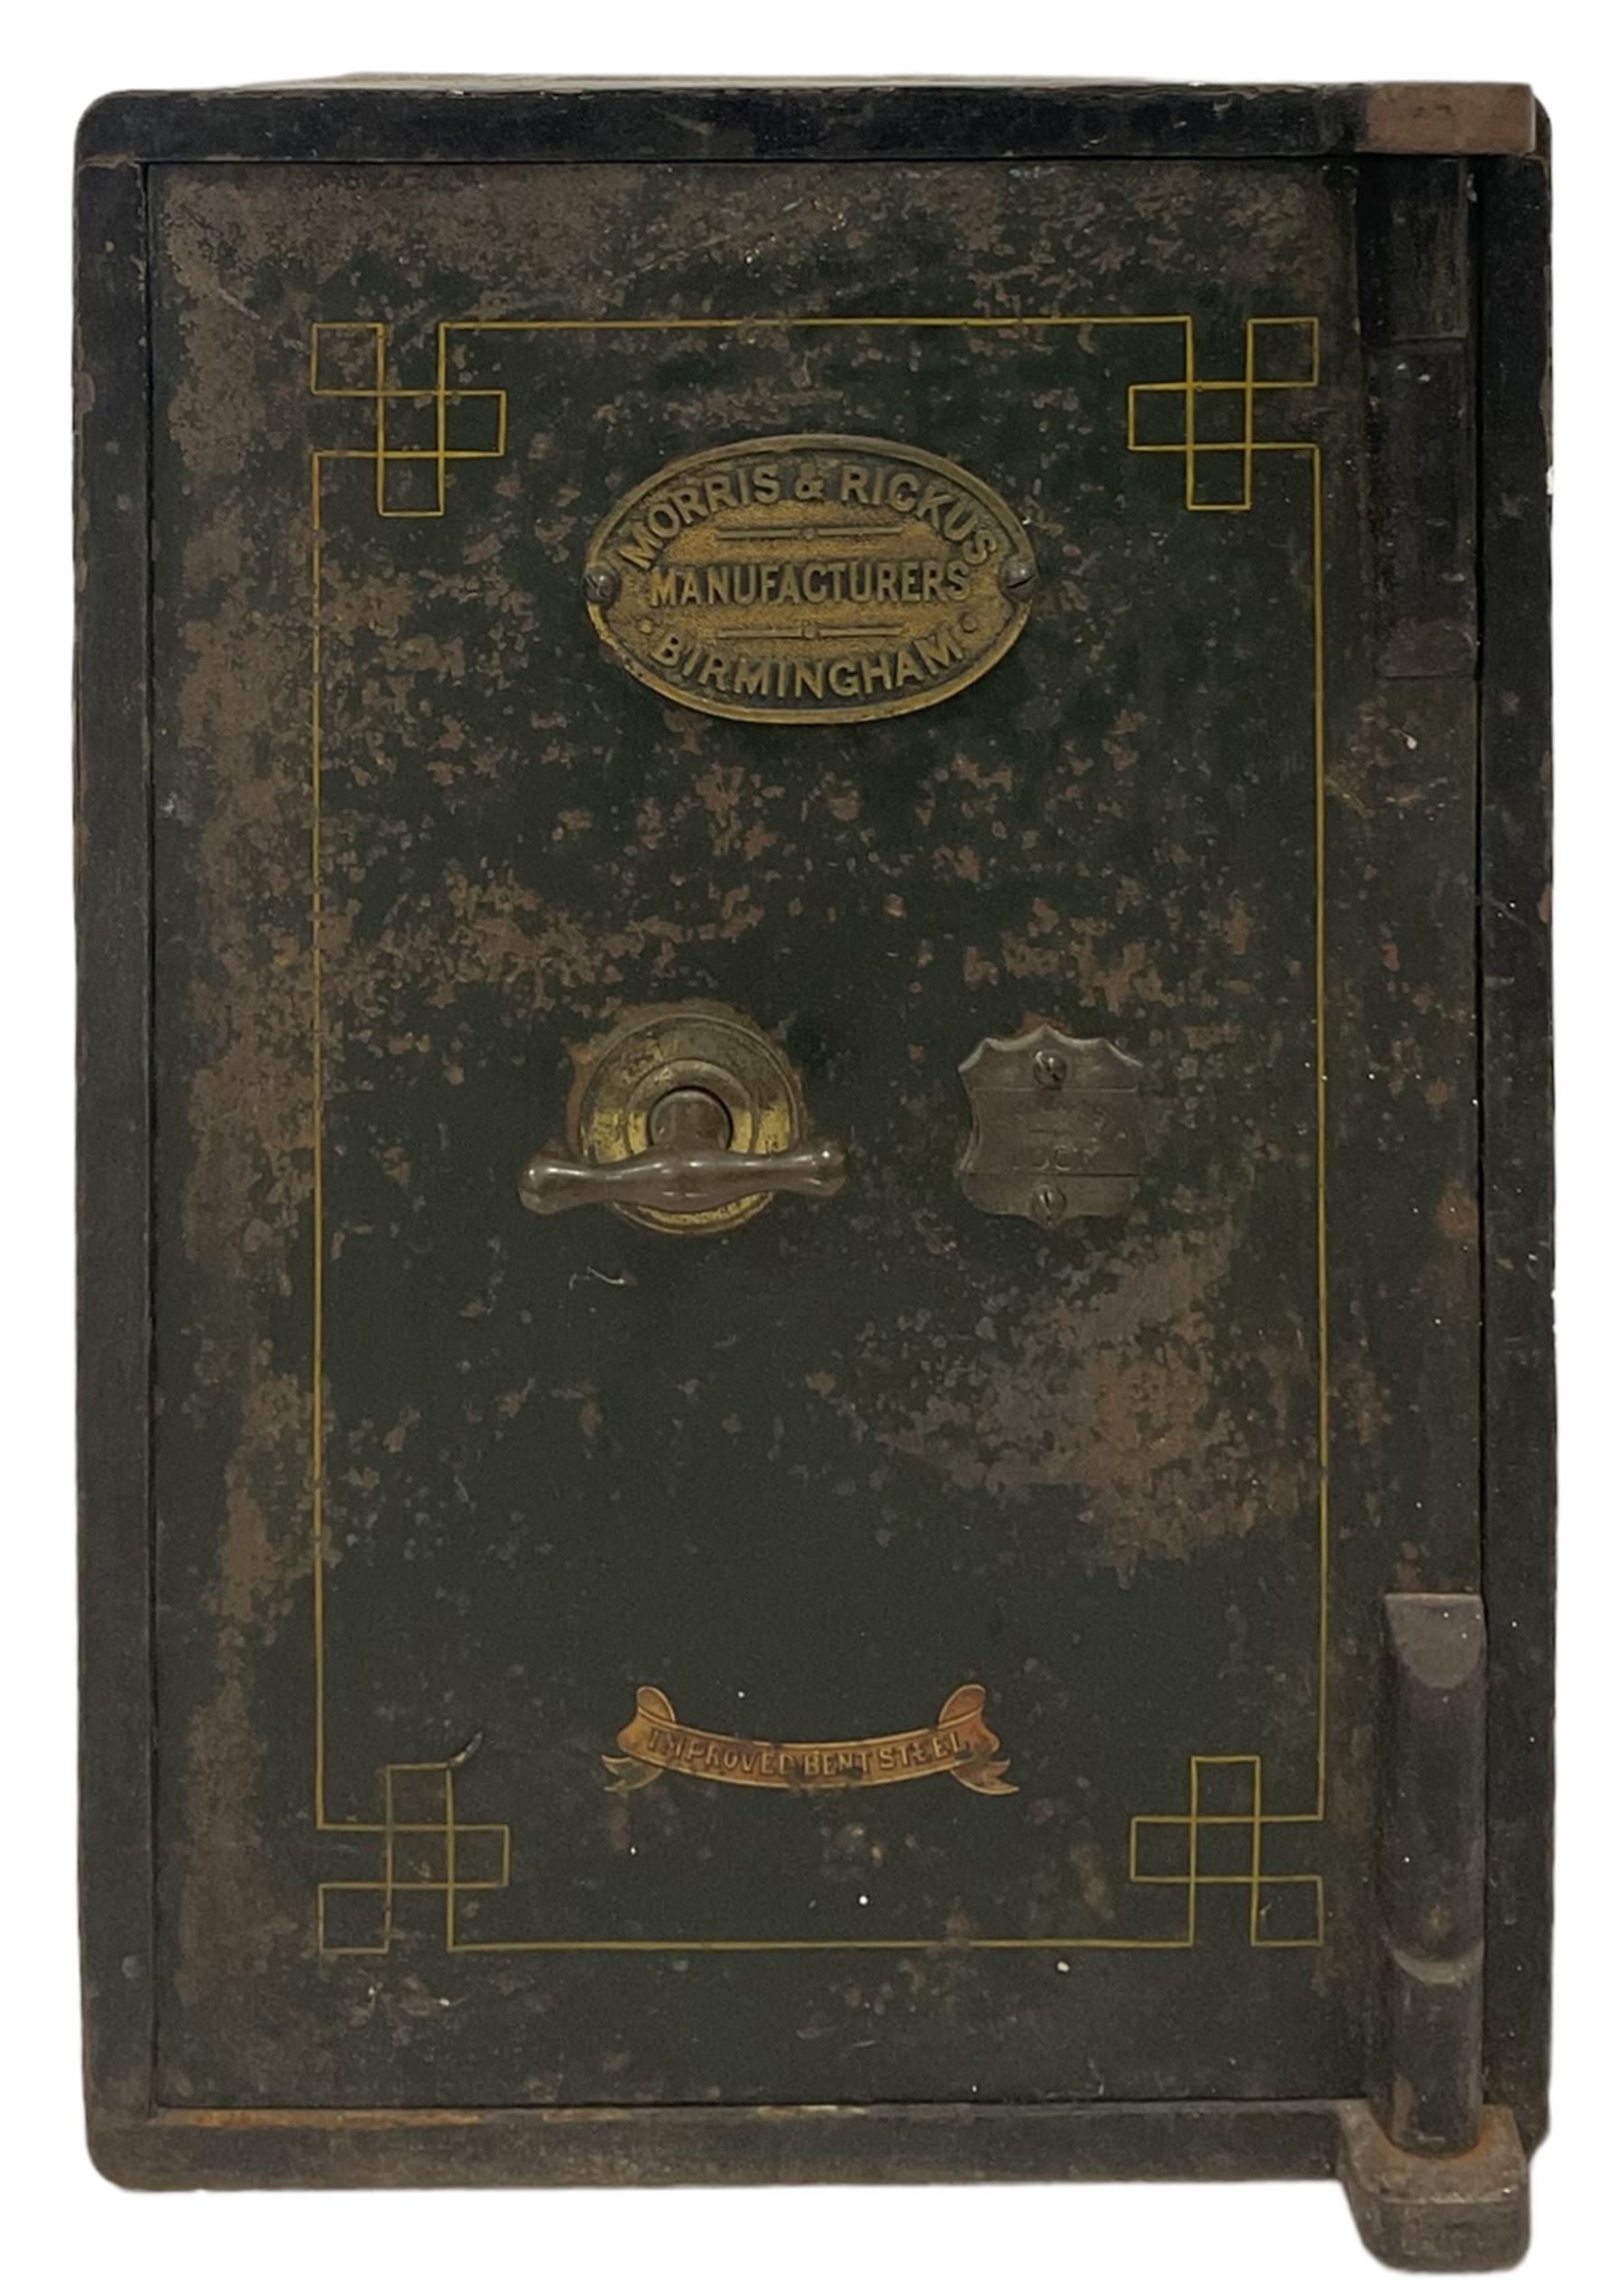 Morris & Rickus of Birmingham - Victorian safe with one hinged door